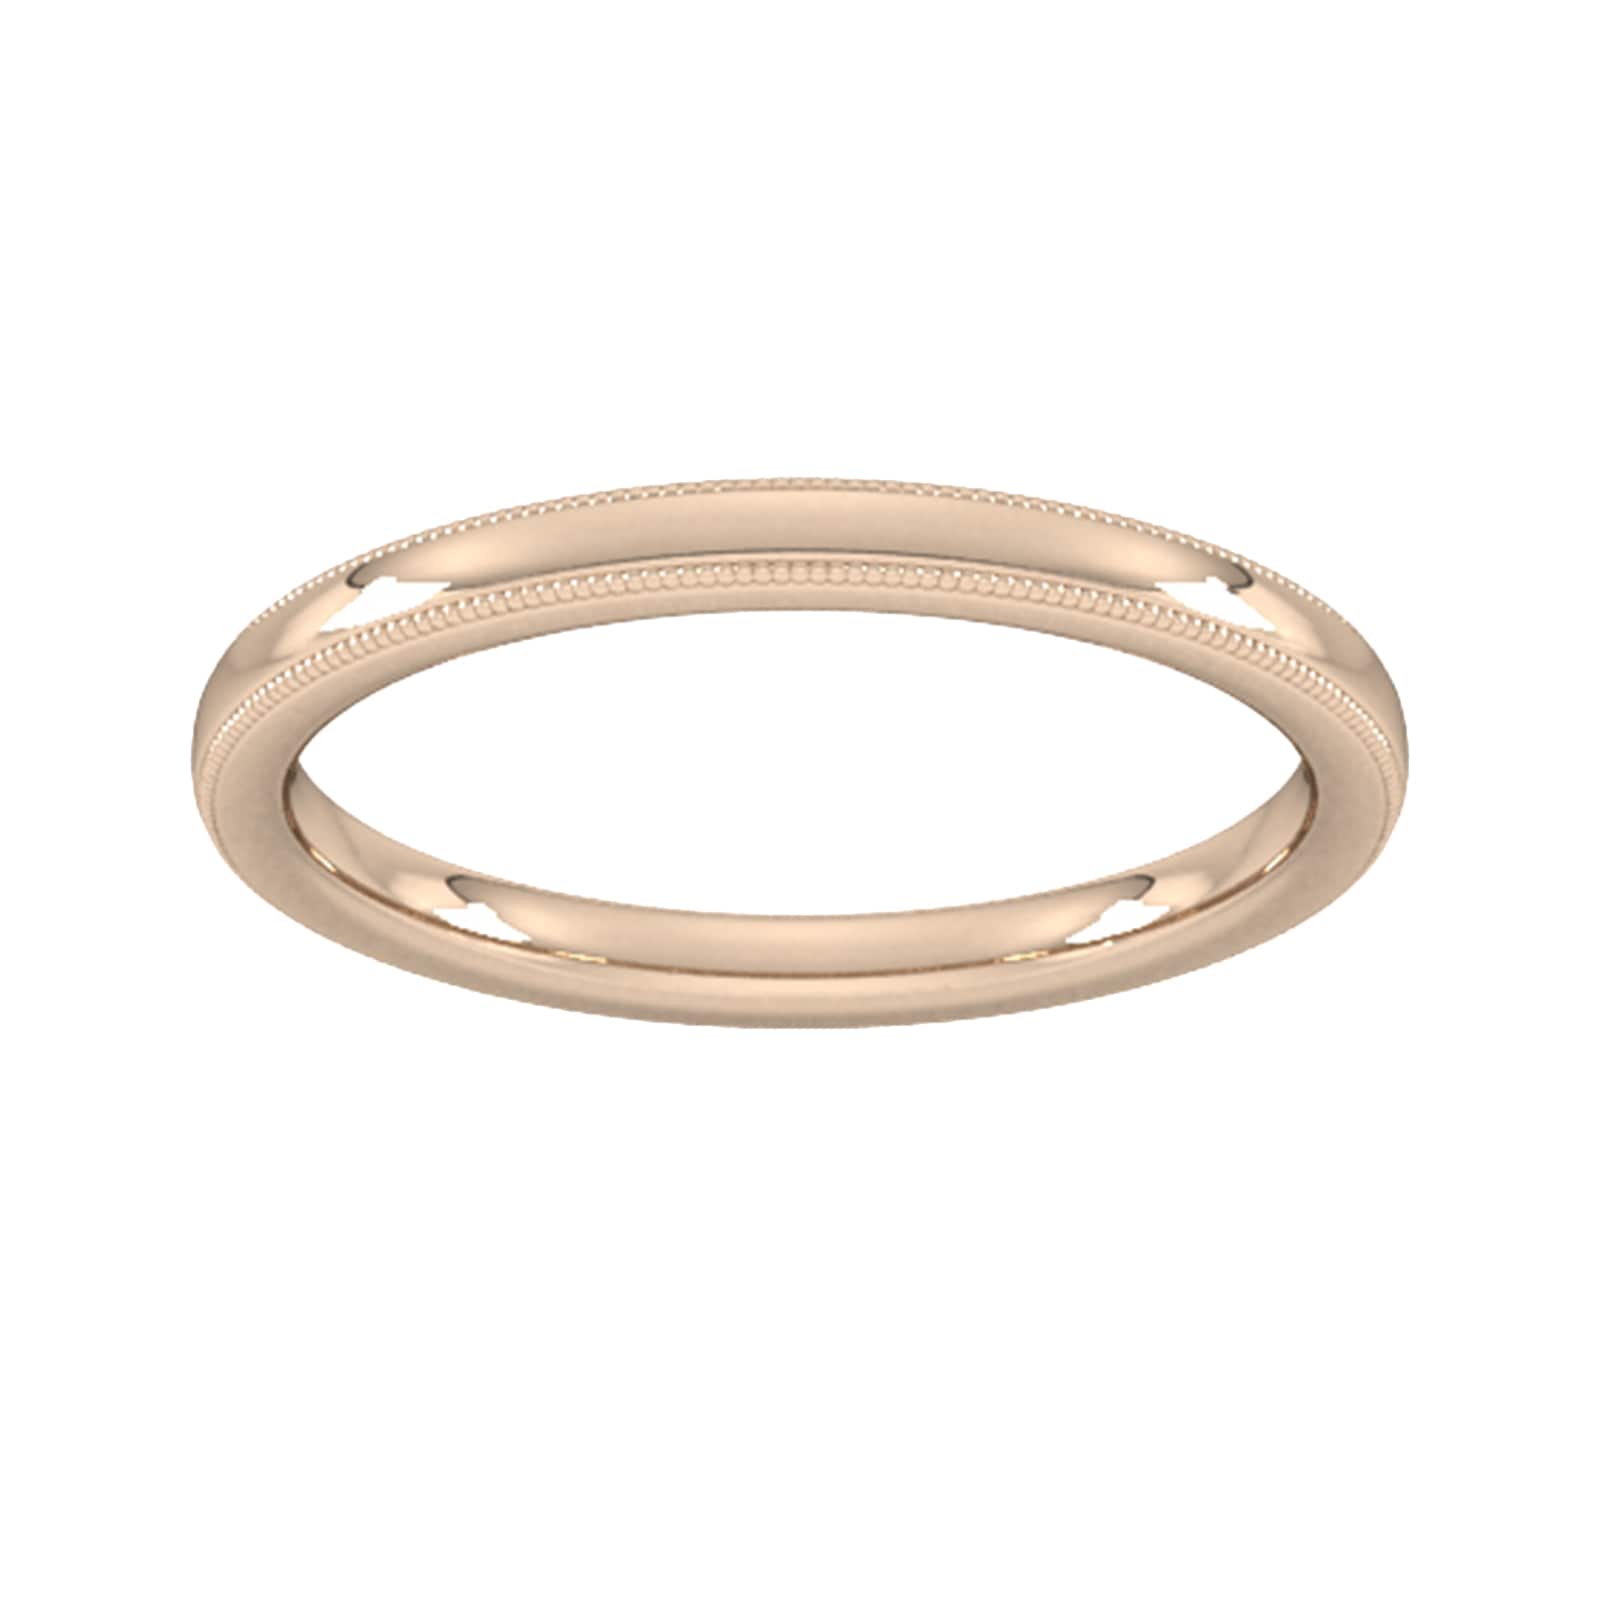 2mm Slight Court Standard Milgrain Edge Wedding Ring In 9 Carat Rose Gold - Ring Size P